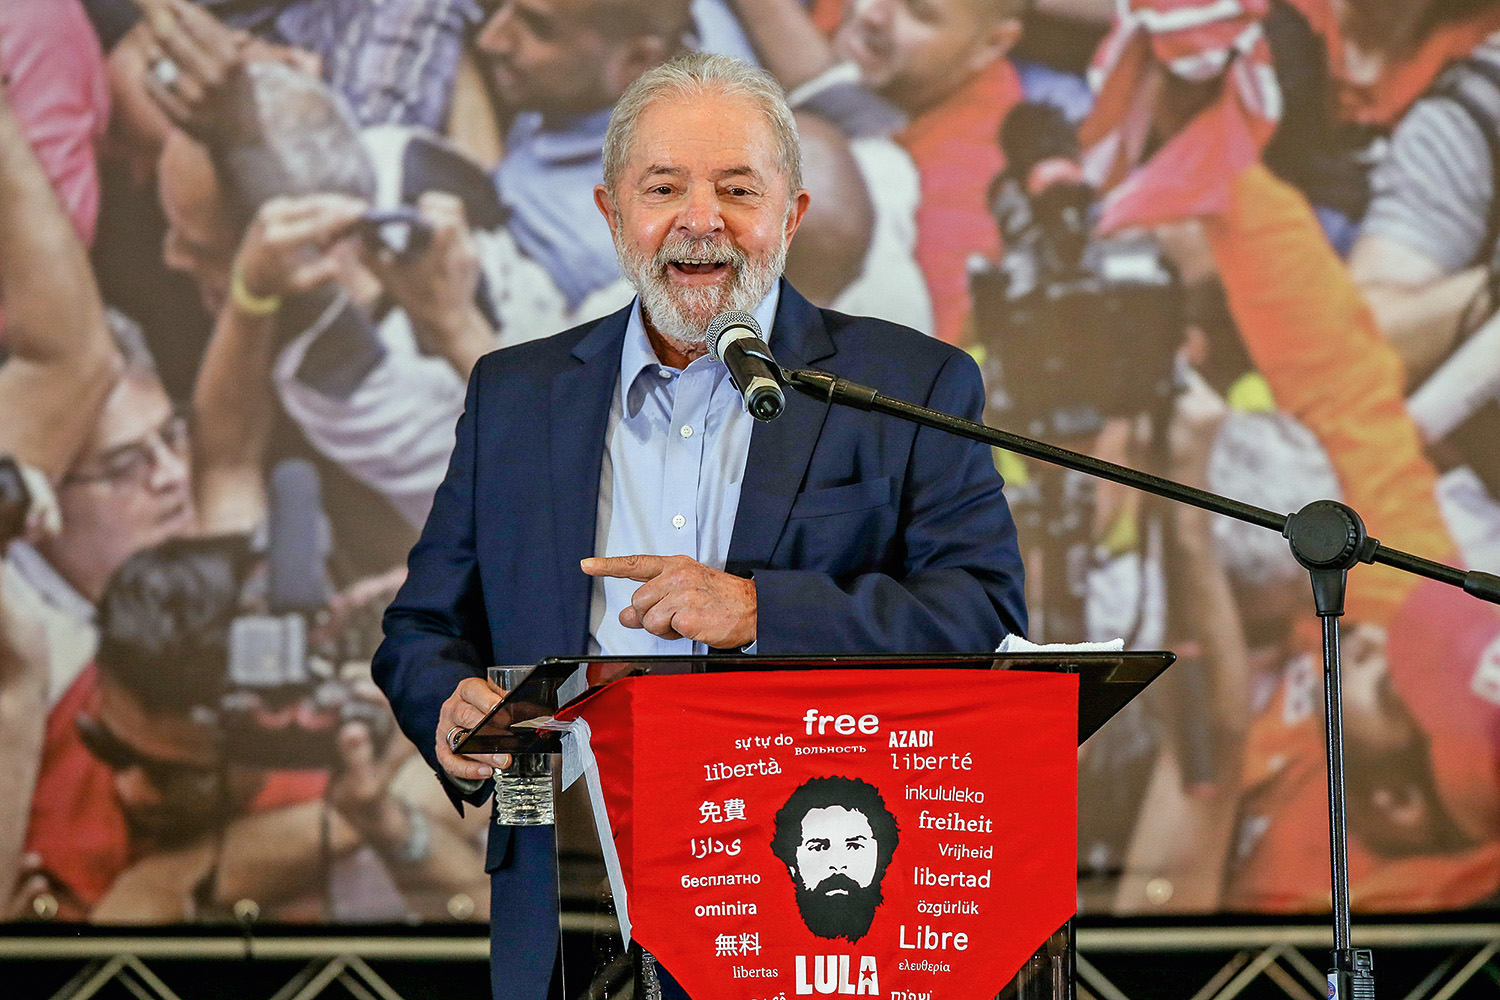  Presidente Lula Participa de Entrega de Unidades Habitacionais e Anúncio de Novos Campi em Recife